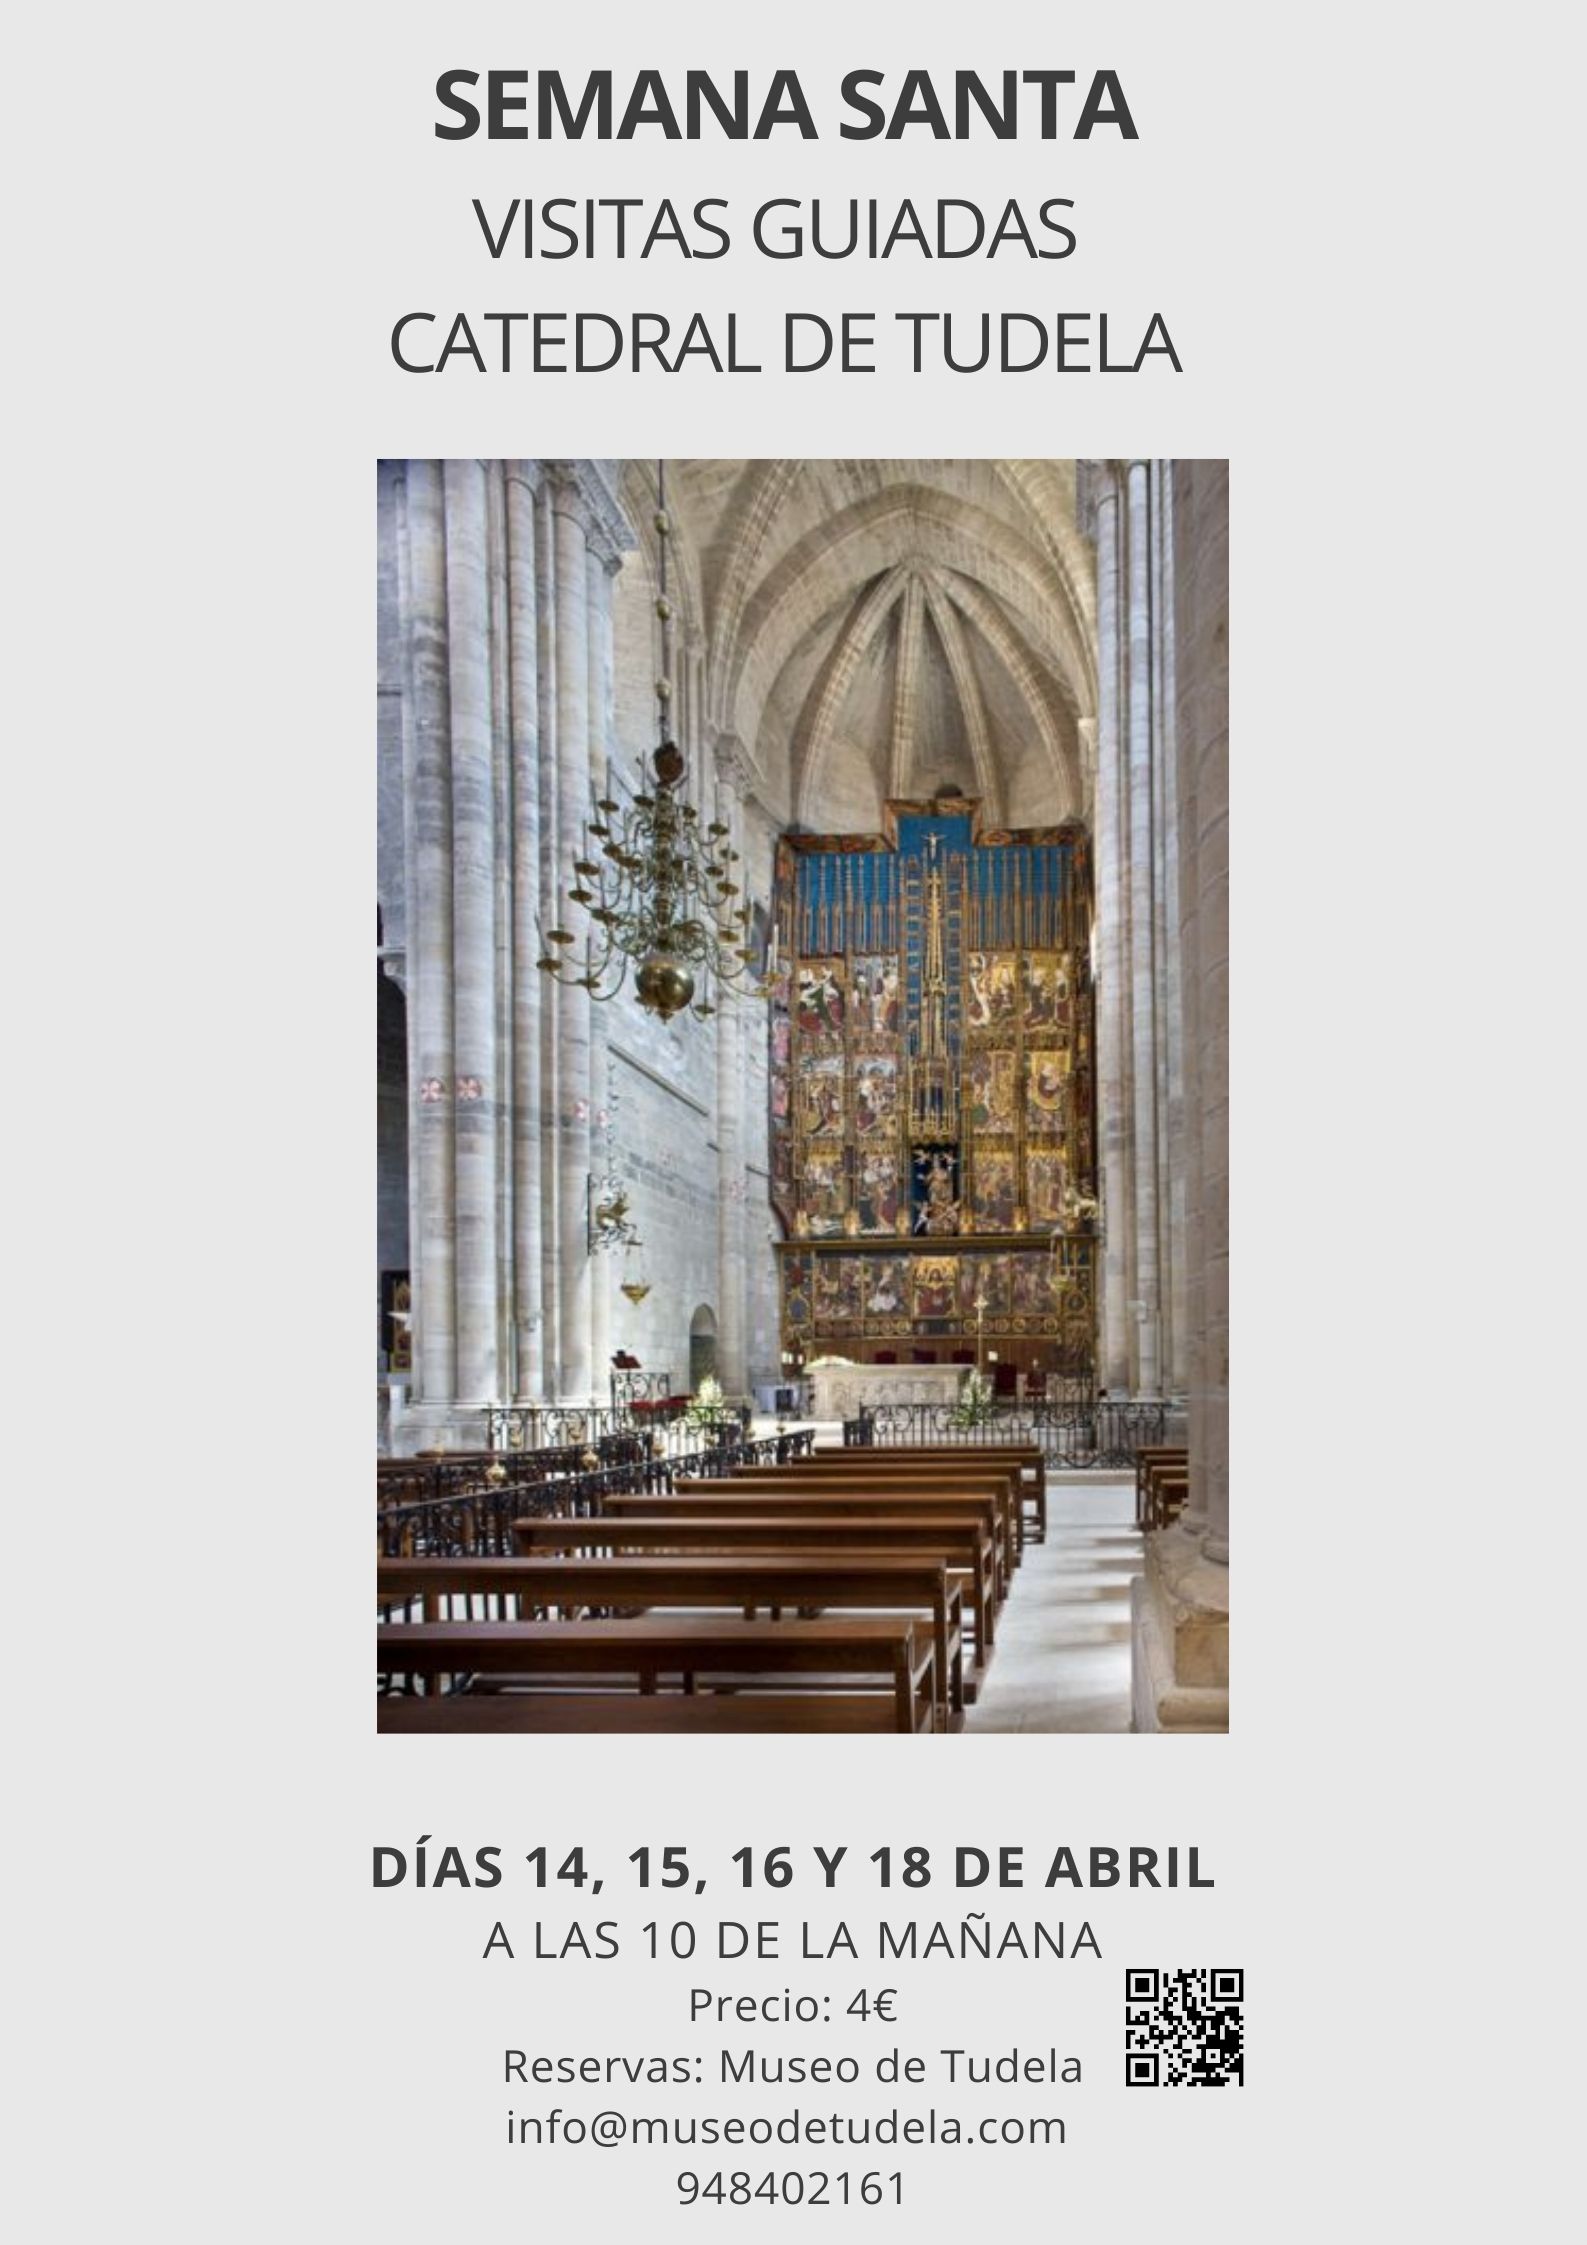 Visitas guiadas a la Catedral de Tudela en Semana Santa. Los días 14, 15, 16 y 18 de abril a las 10 de la mañana.